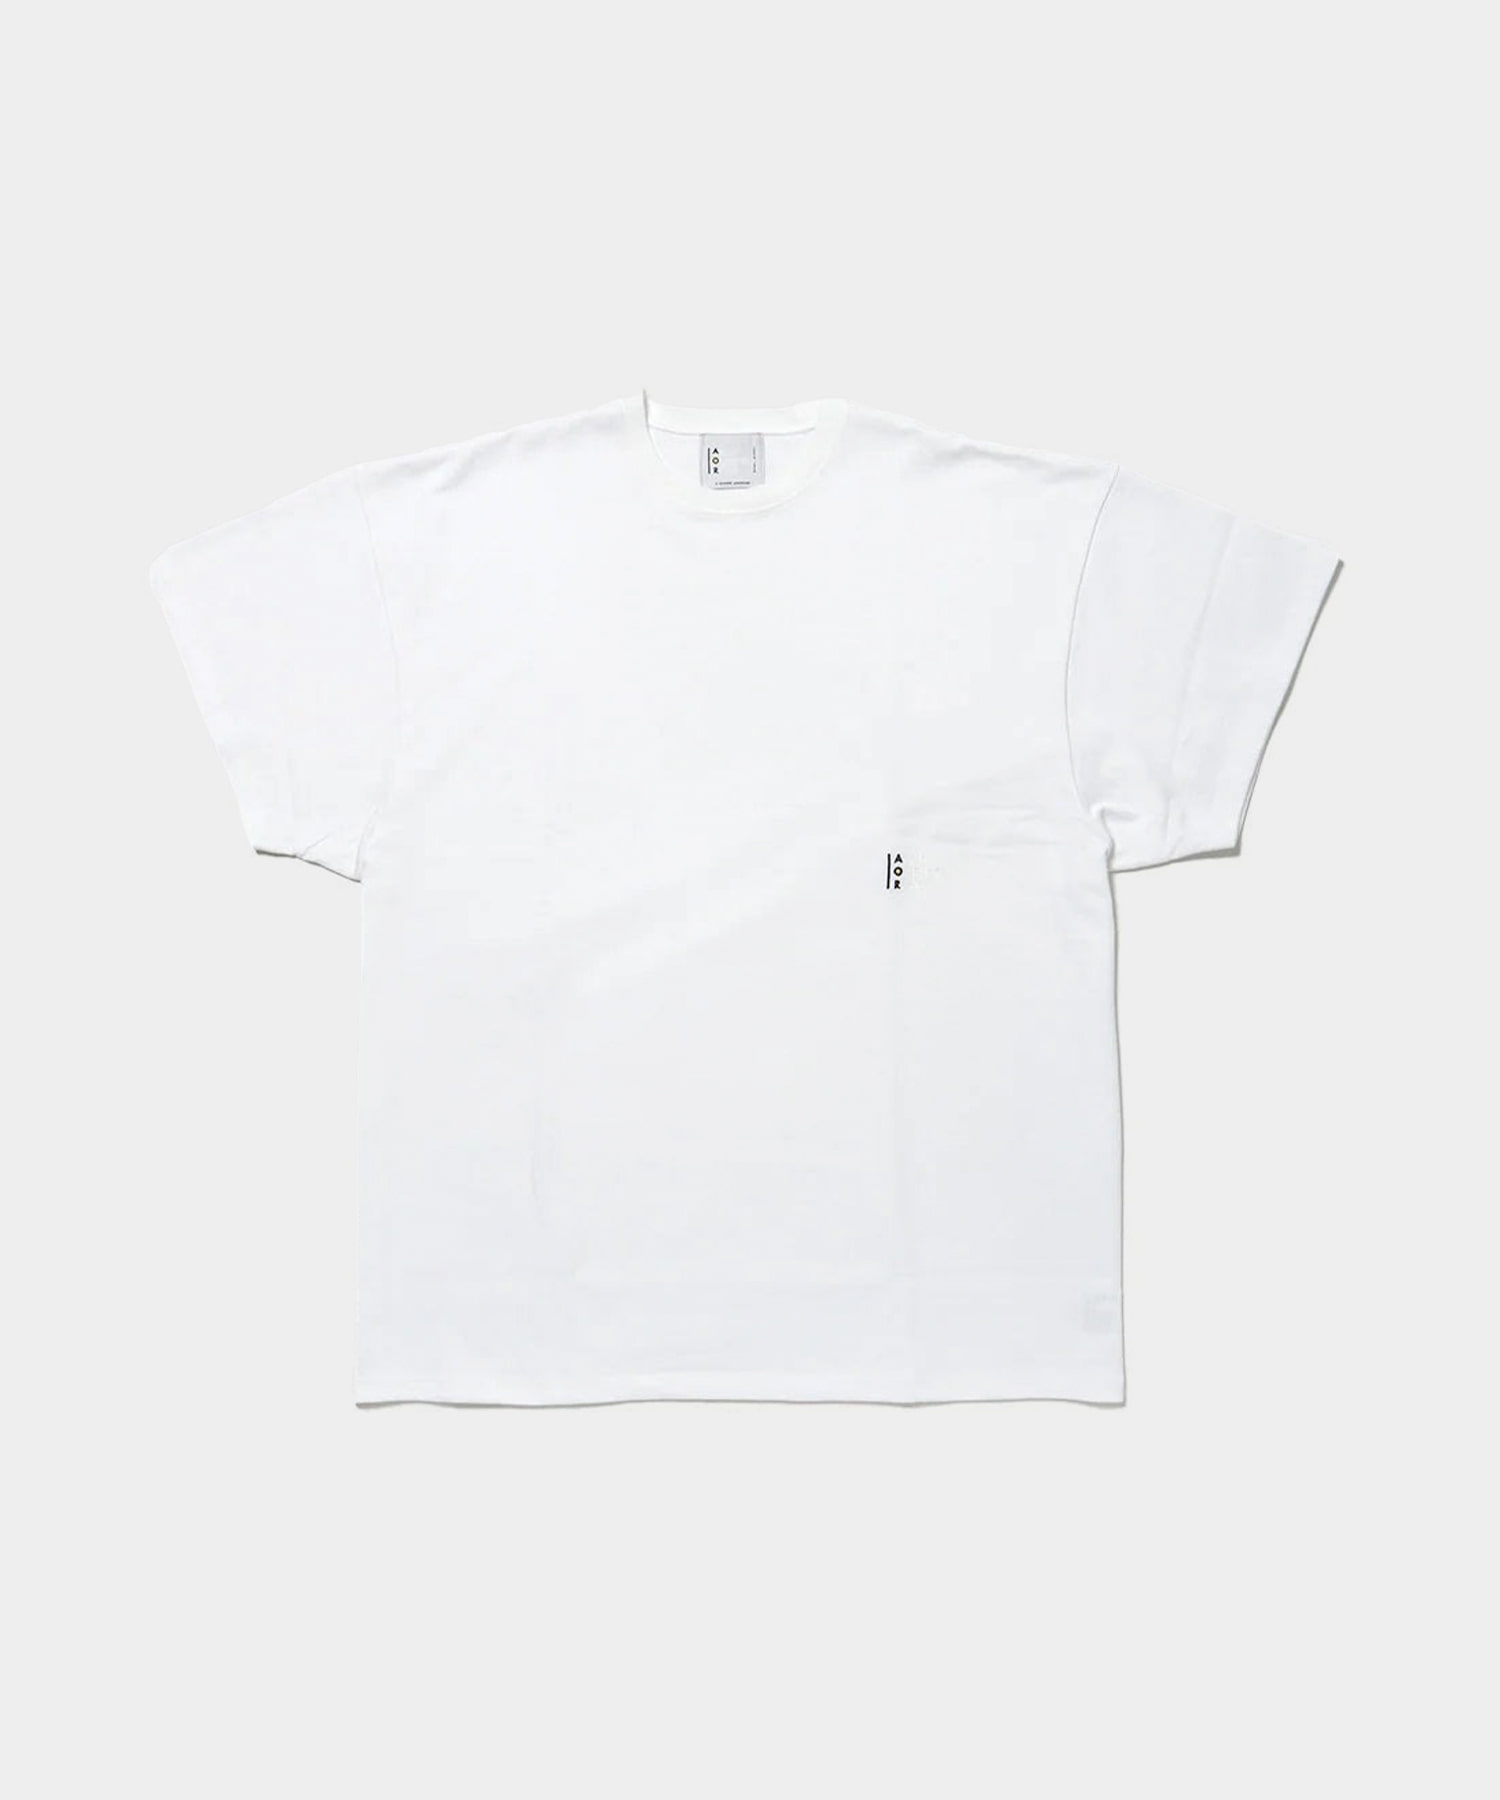 S/S T-shirt (White)